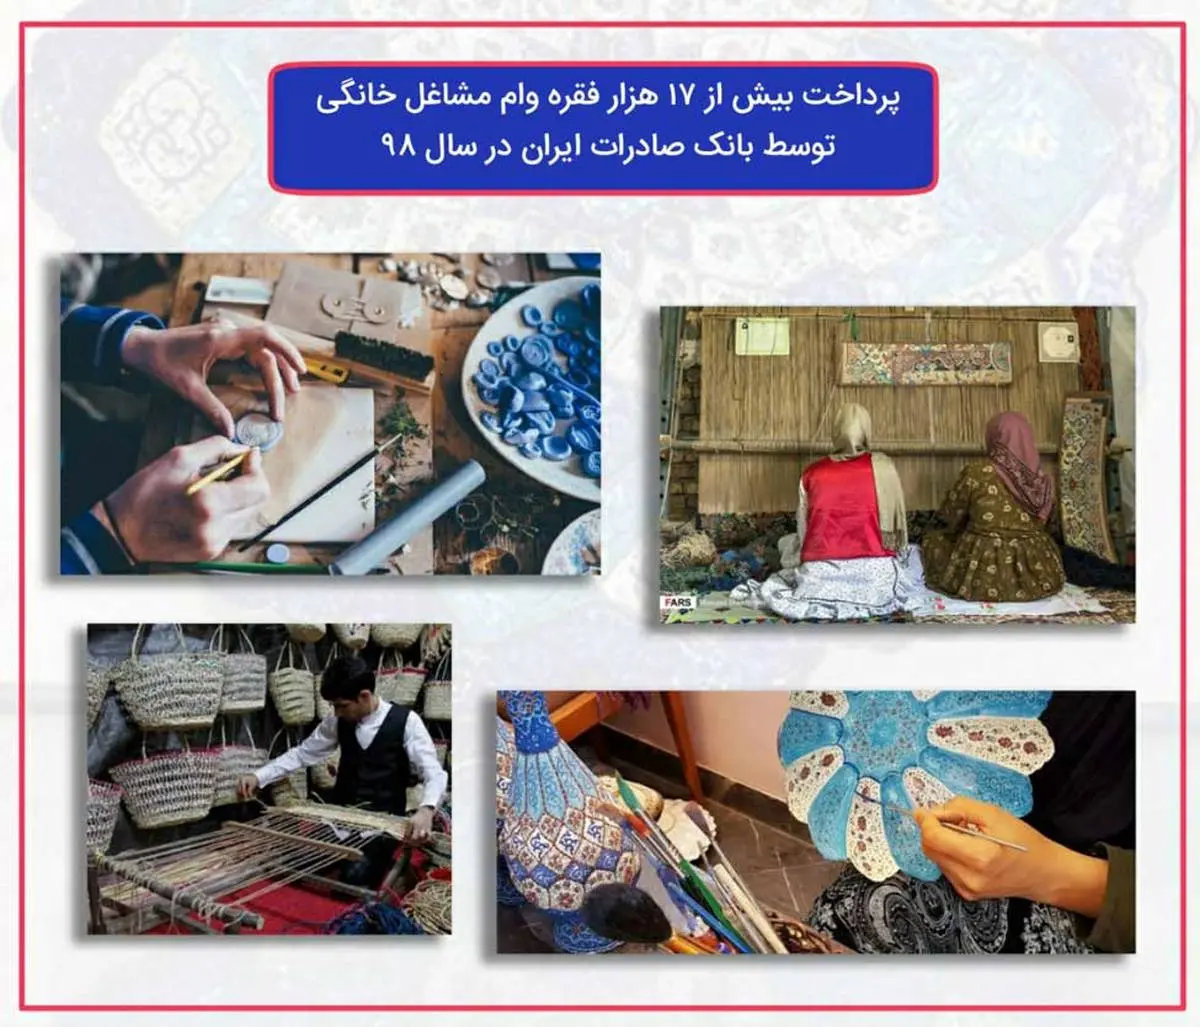 ​پرداخت بیش از ١٧ هزار فقره وام مشاغل خانگی توسط بانک صادرات ایران در سال ٩٨

